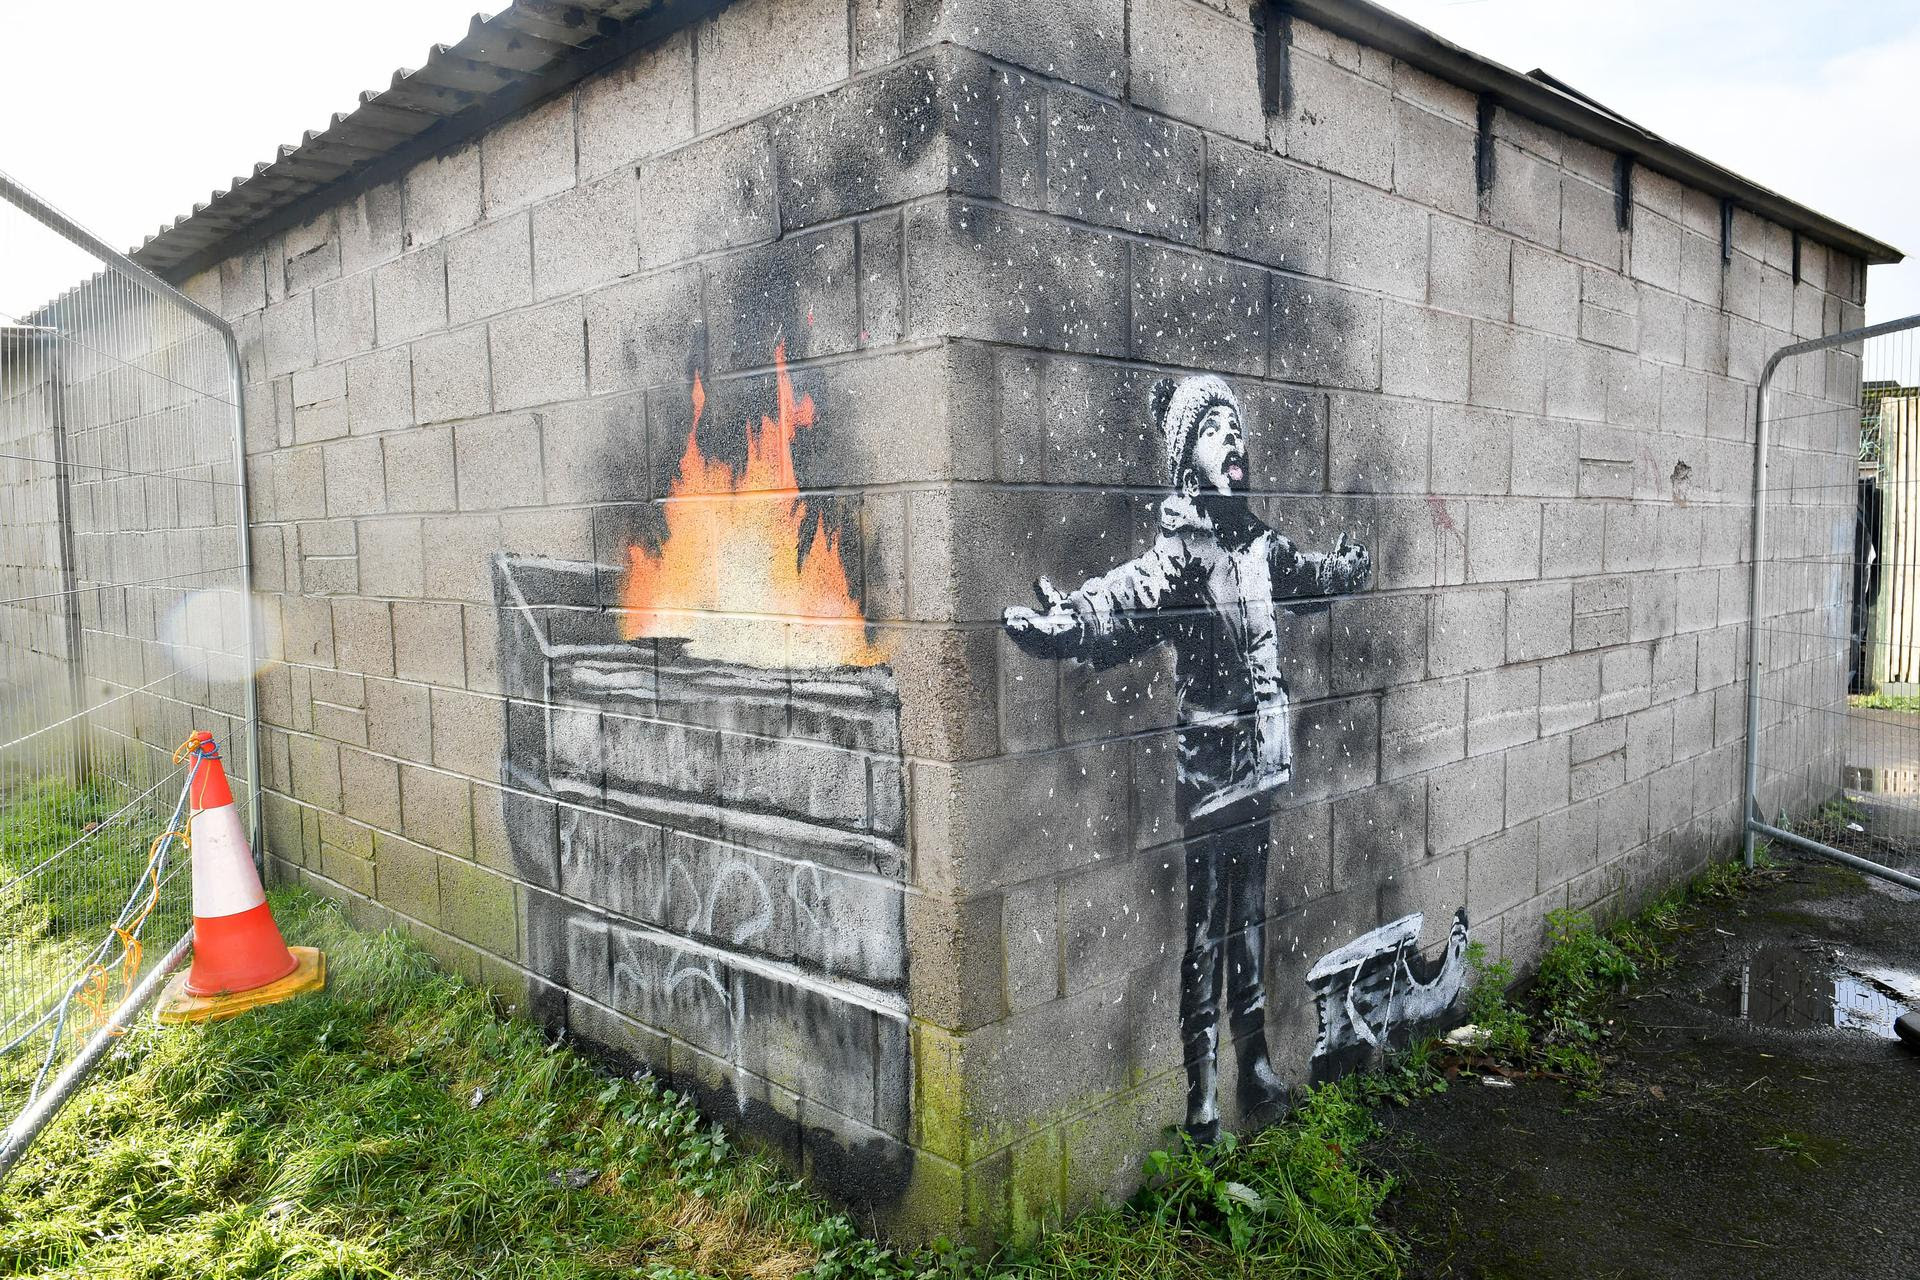 Photo of Banksy’s “eco” street art in Monza